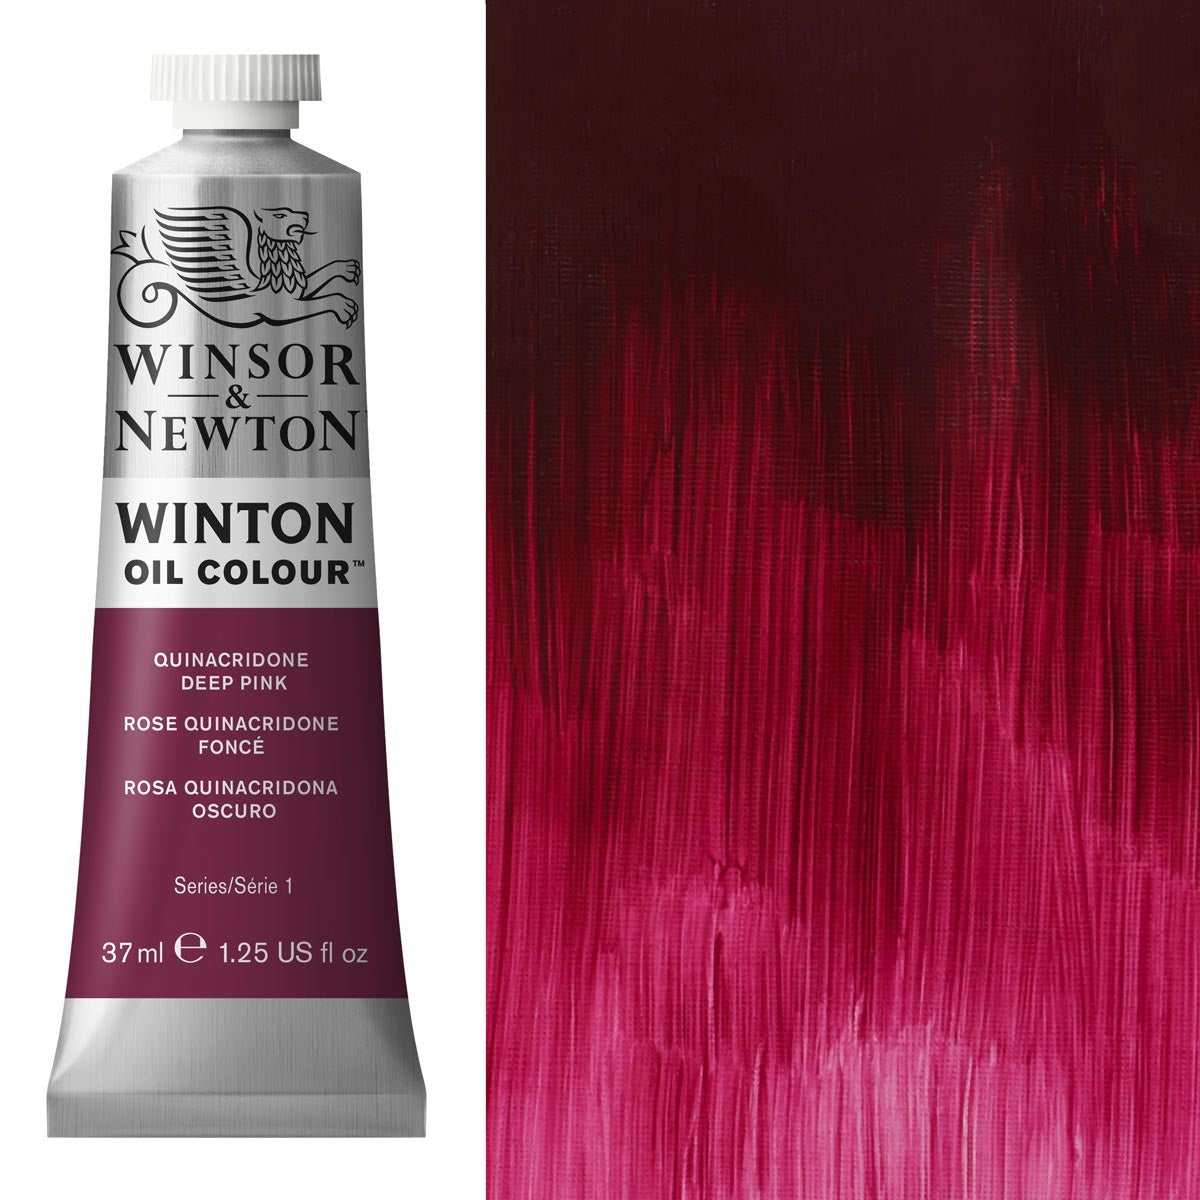 Winsor und Newton - Winton Ölfarbe - 37ml - Chinacridon Deep Pink